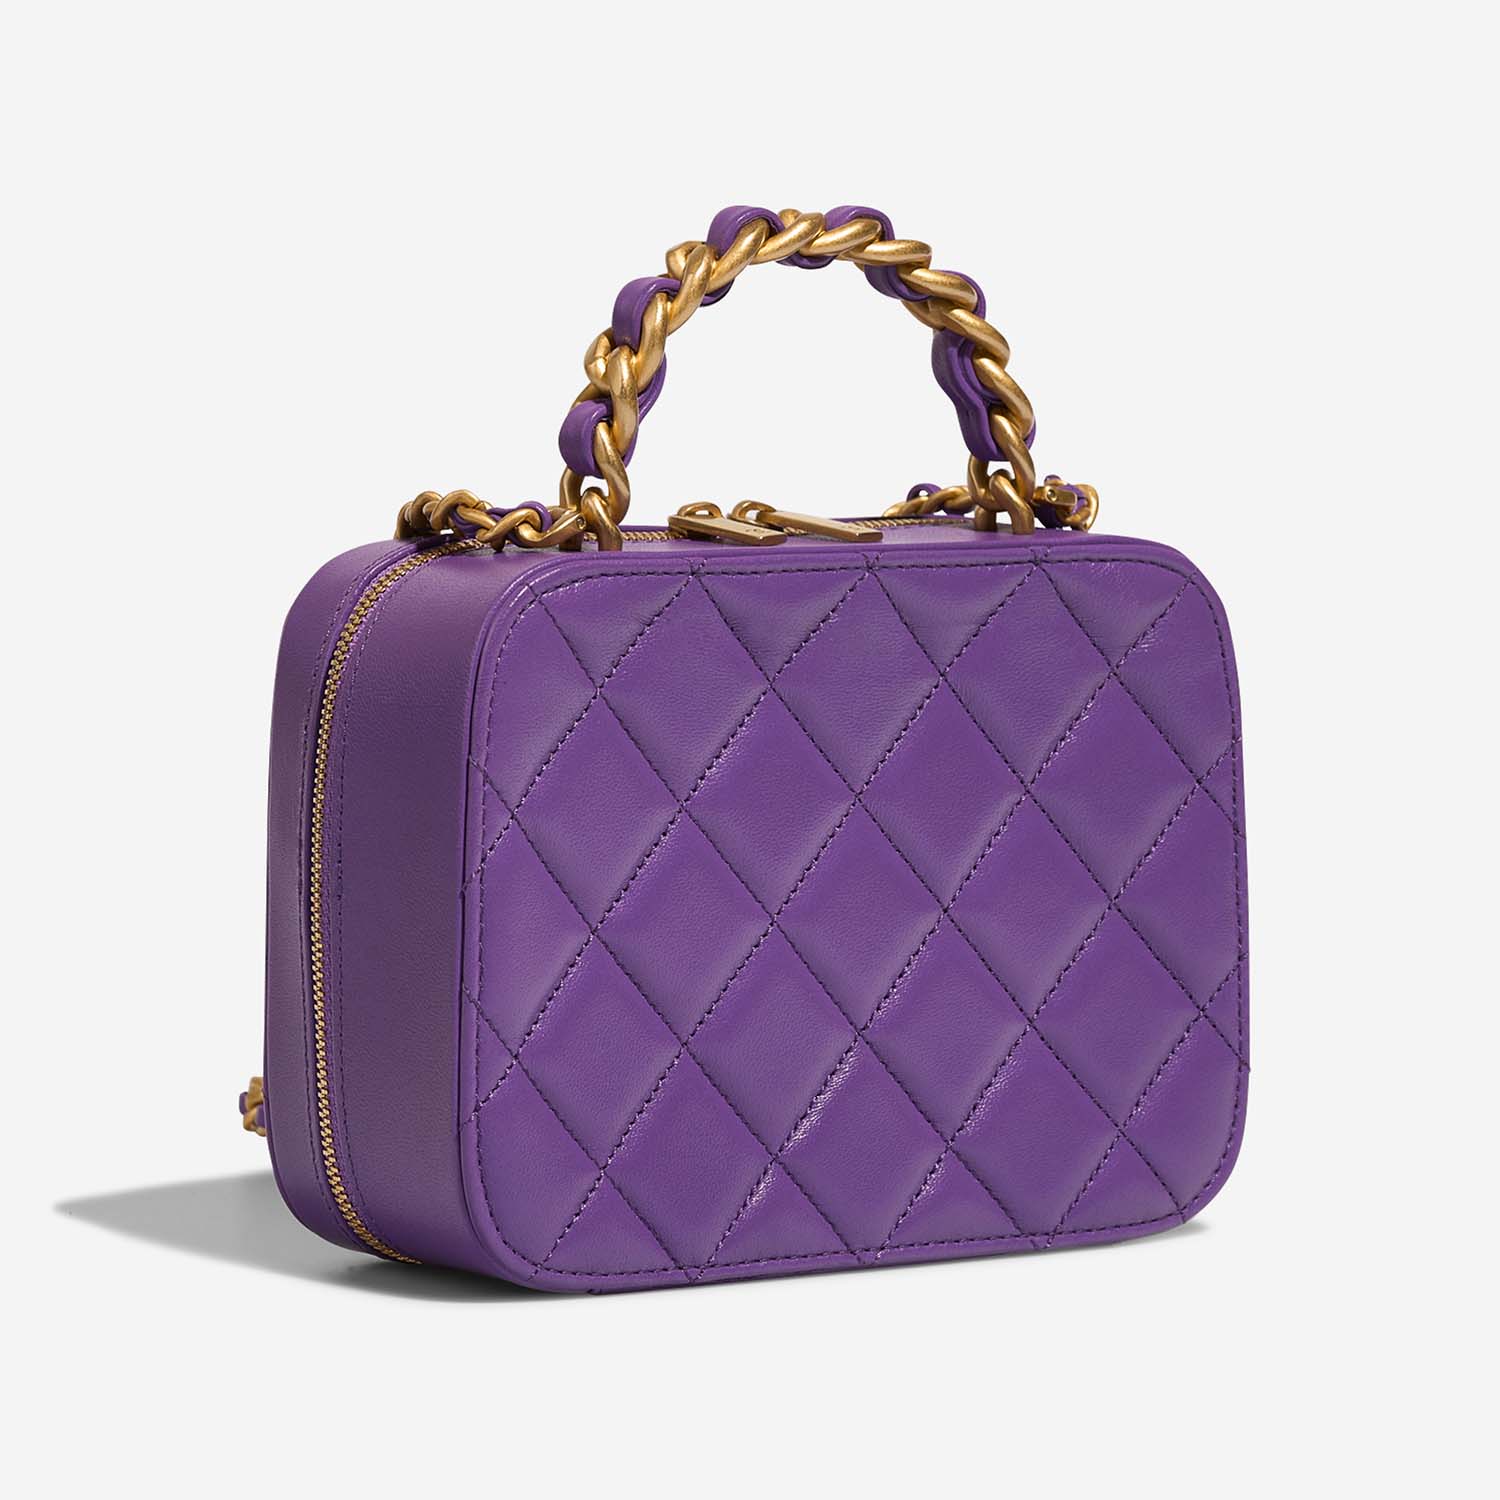 Chanel Vanity Small Violet Side Back | Sell your designer bag on Saclab.com